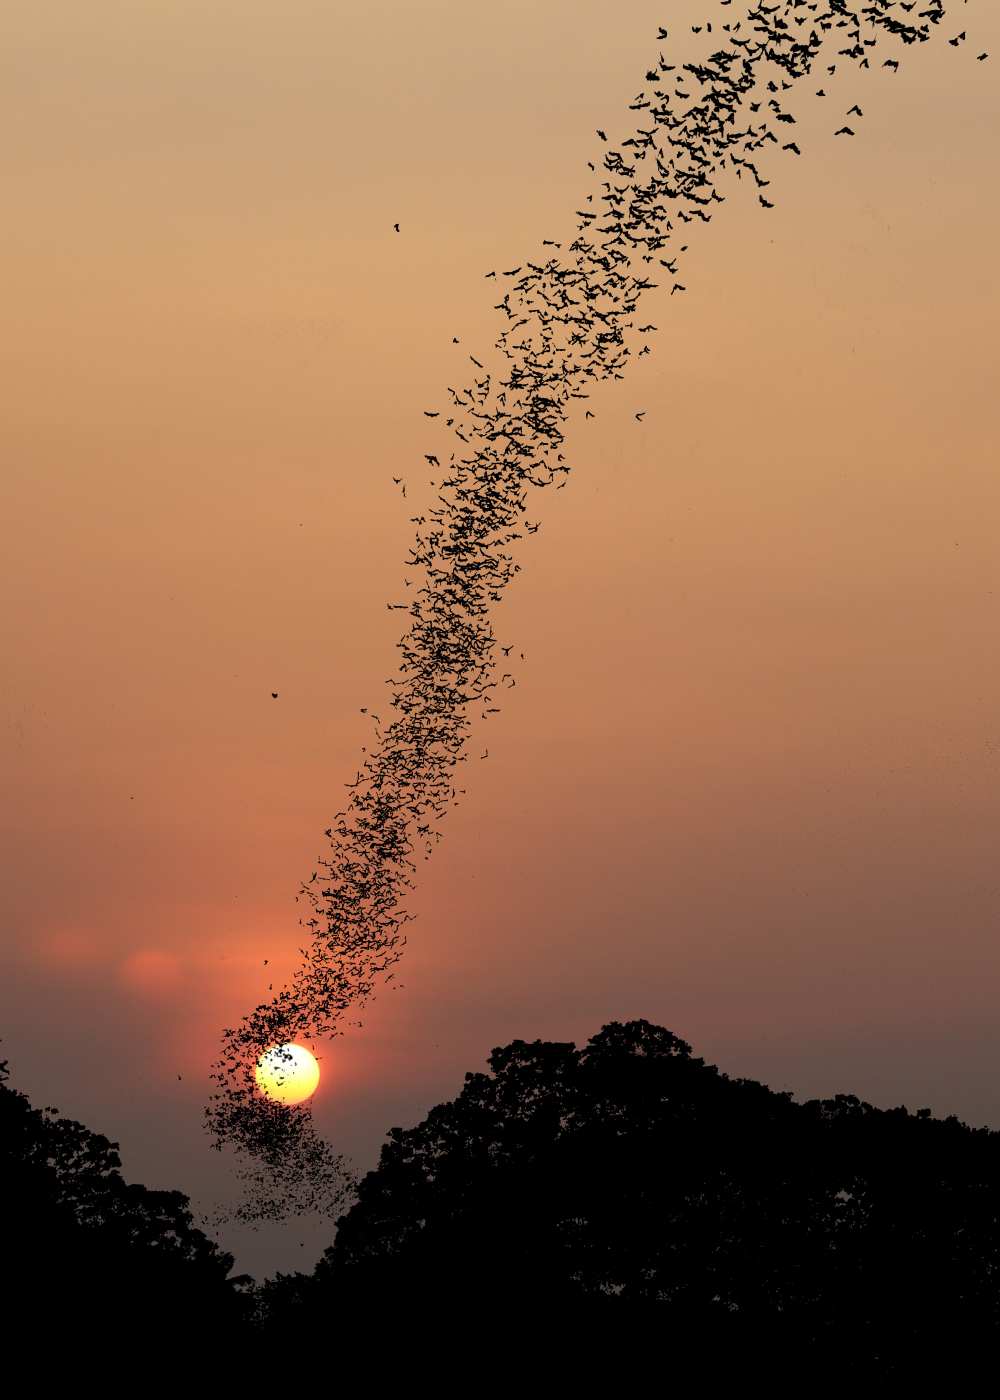 Bat swarm at sunset from Jean De Spiegeleer